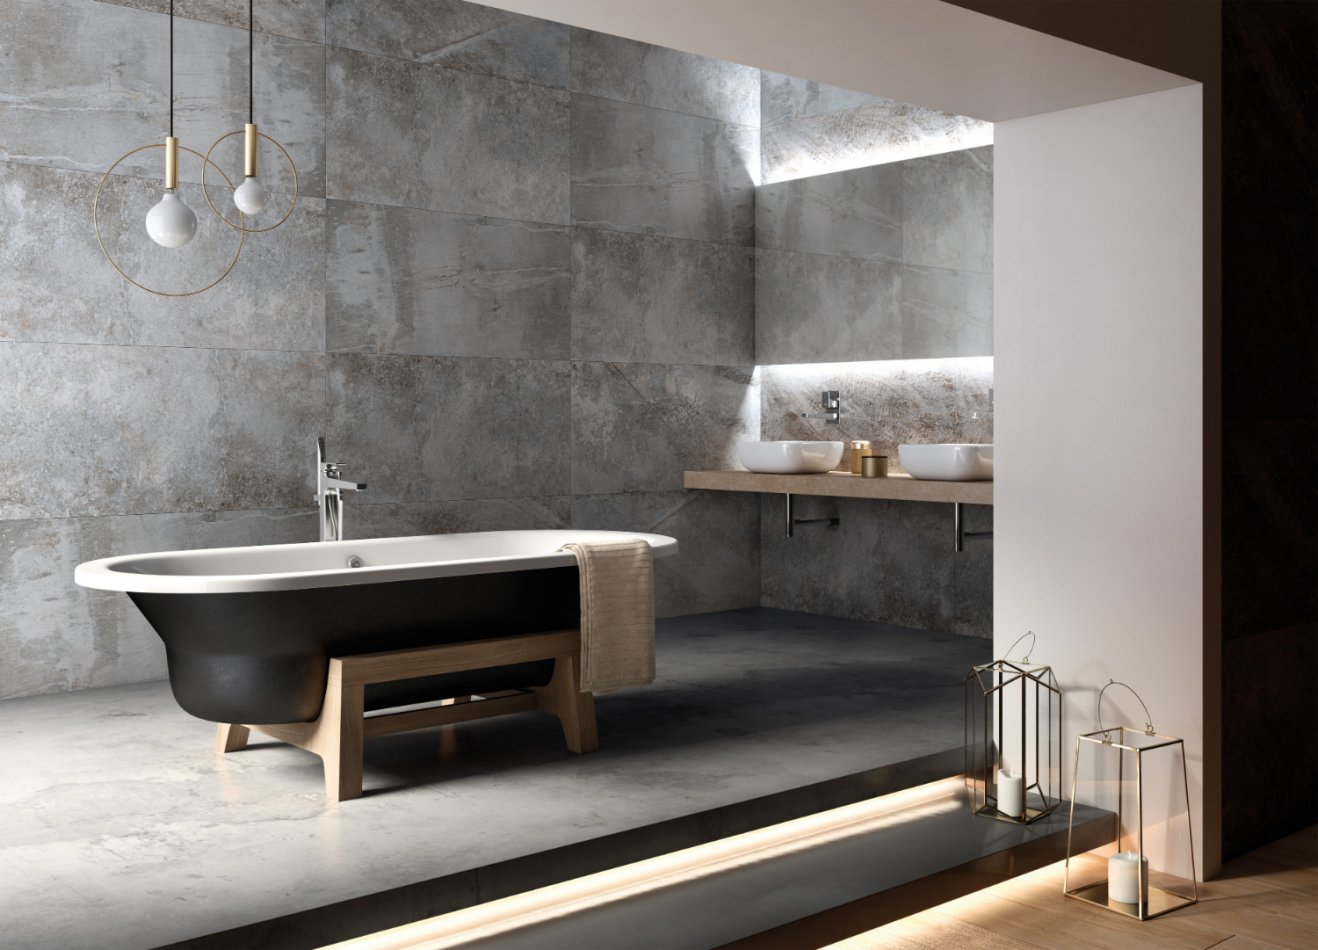 Baignoire ilot et carrelage gris pour une salle de bains moderne.